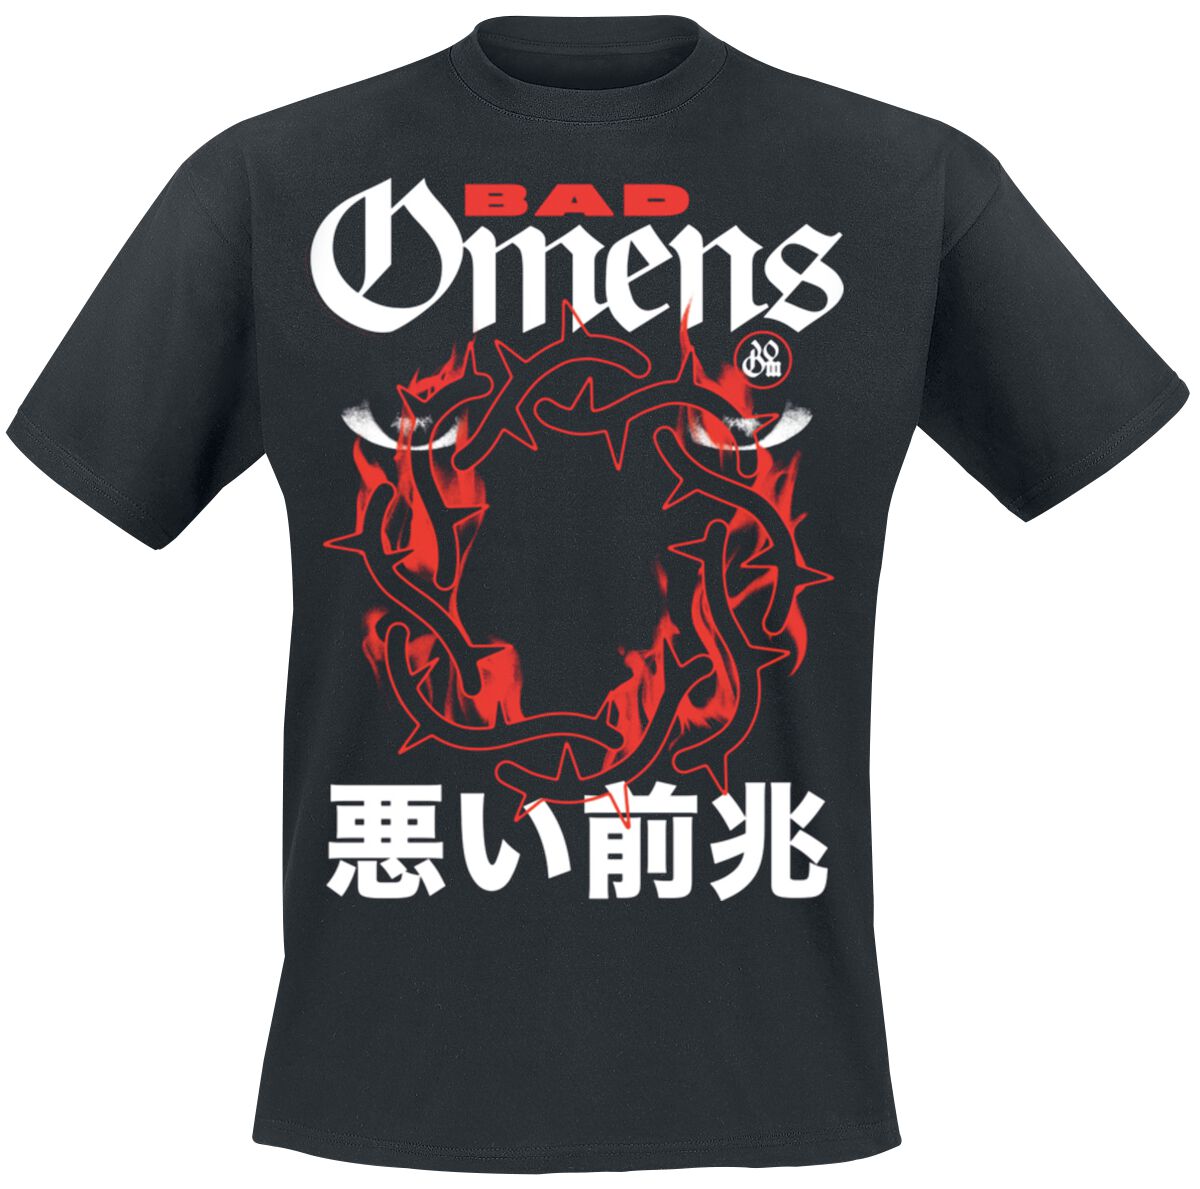 Bad Omens T-Shirt - Villian - M - für Männer - Größe M - schwarz  - Lizenziertes Merchandise!